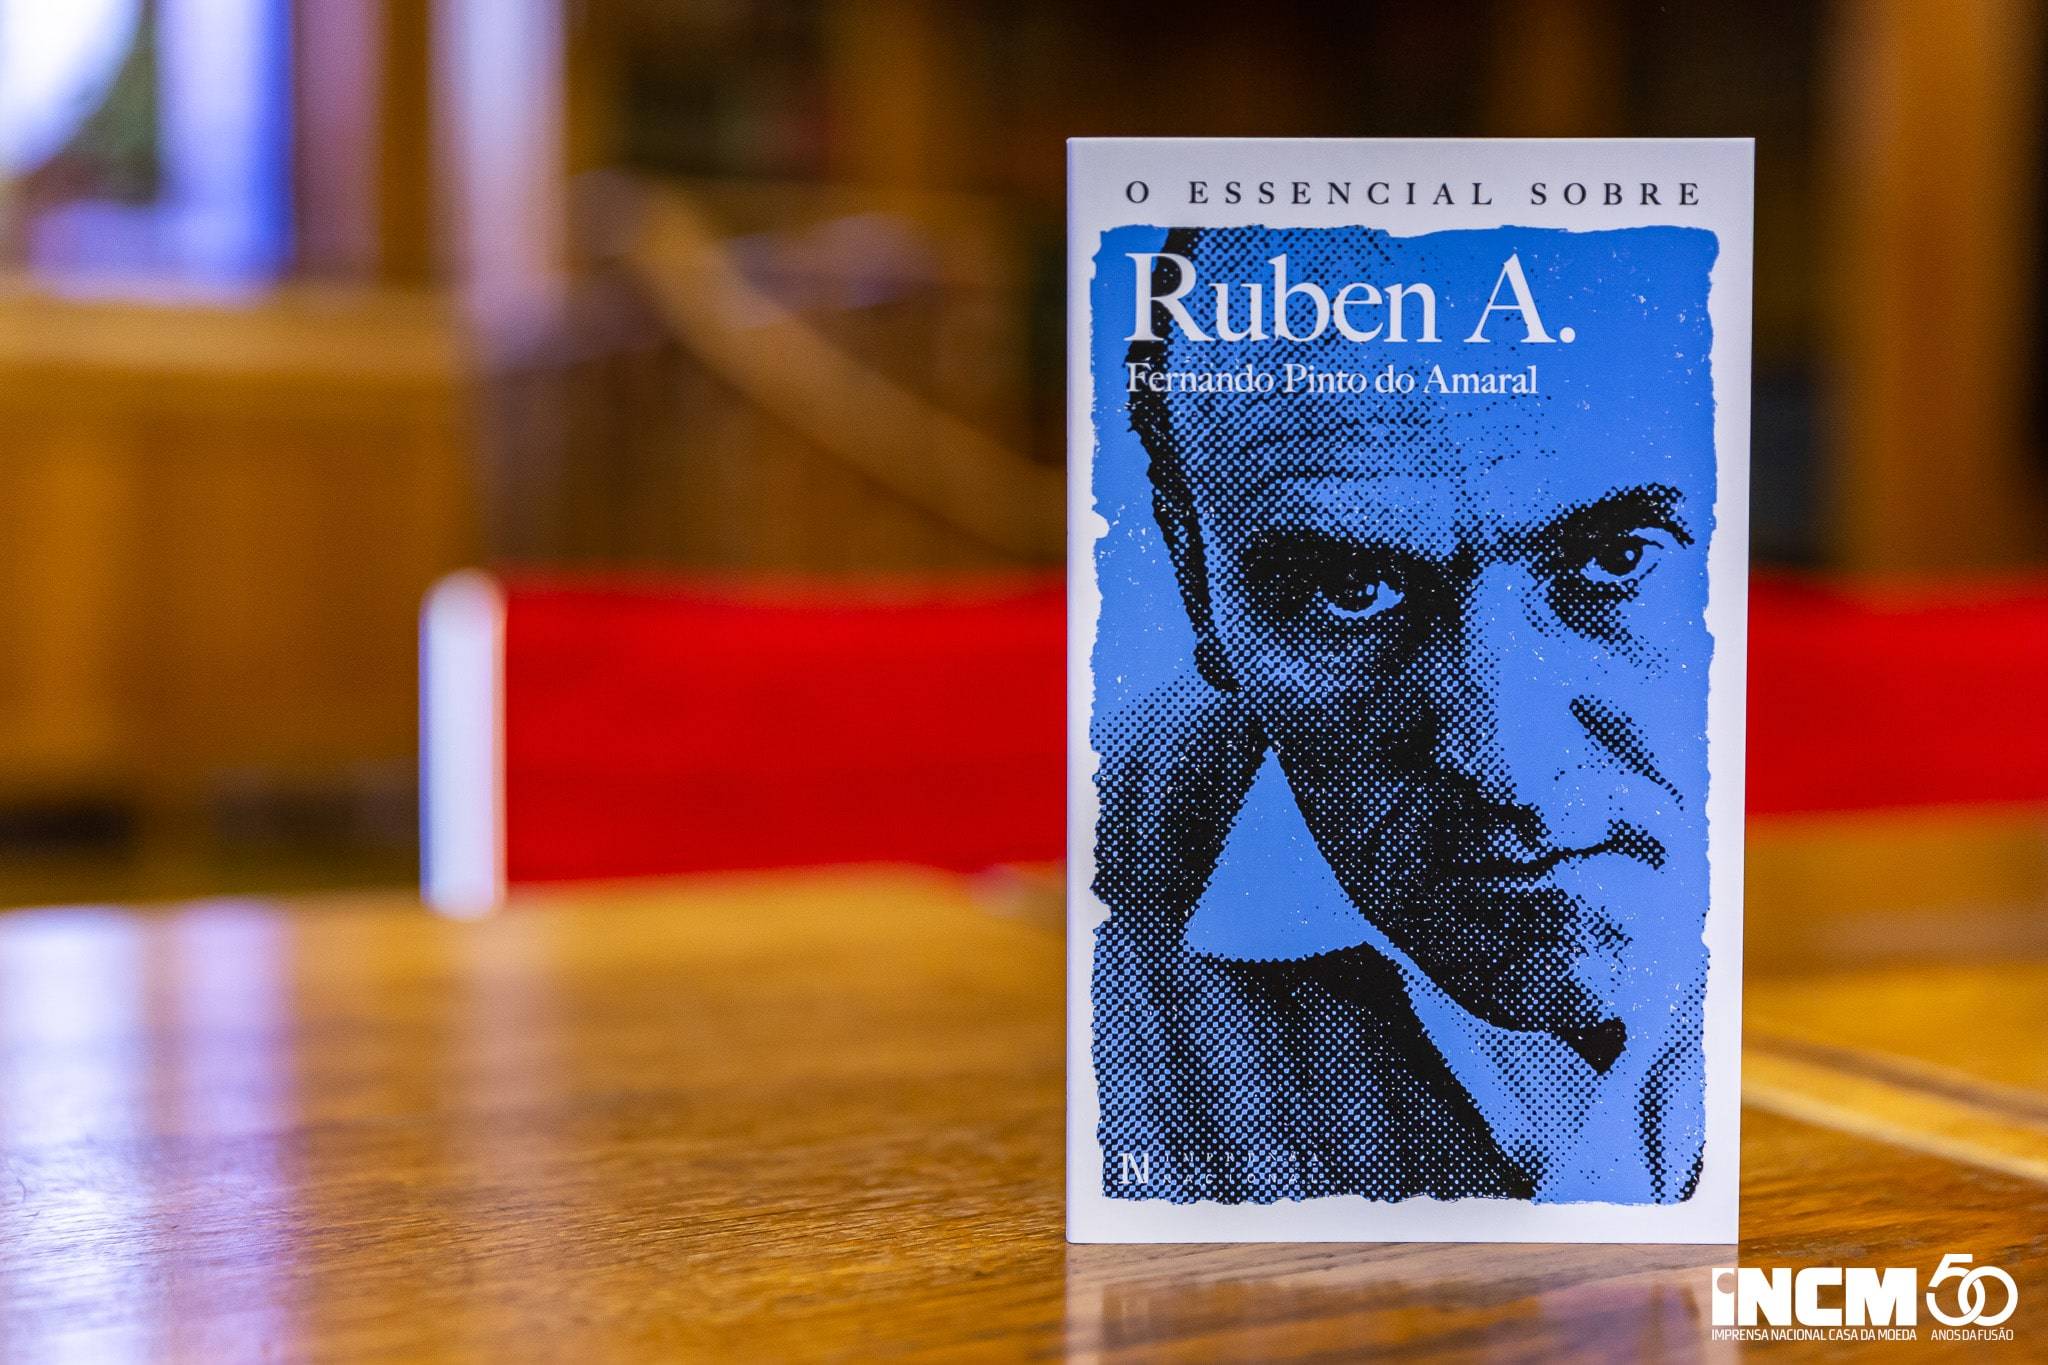 Apresentado O Essencial sobre Ruben A., de Fernando Pinto do Amaral, na Biblioteca da Imprensa Nacional